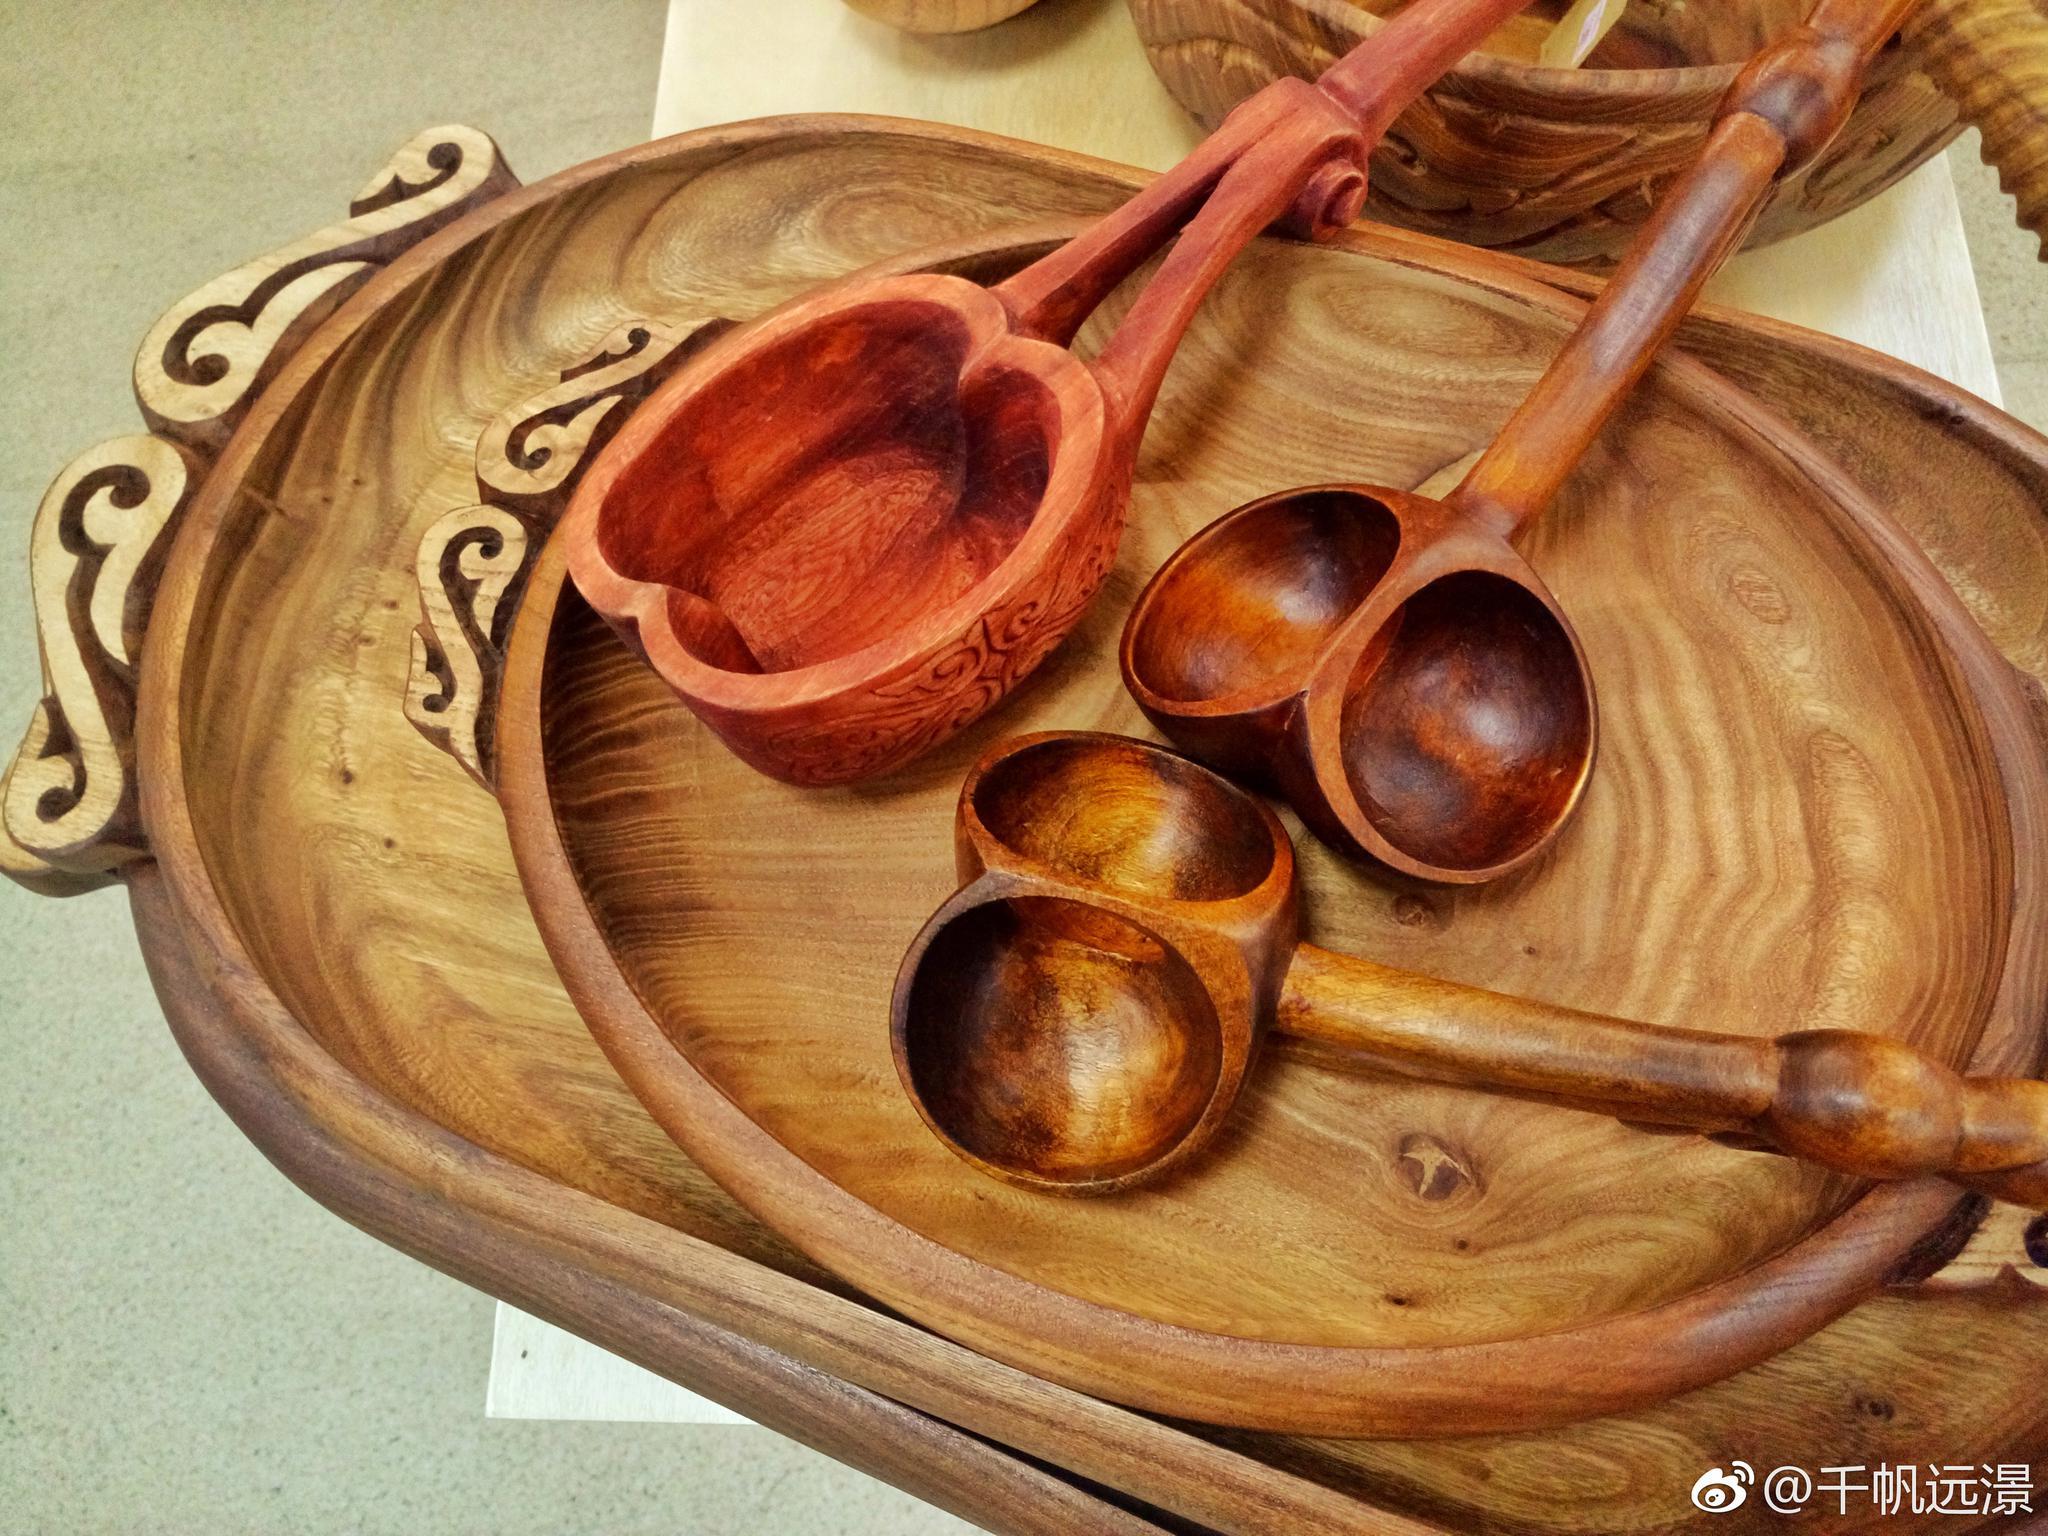 哈萨克斯坦传统手工艺品。匠人精神,纯手工精